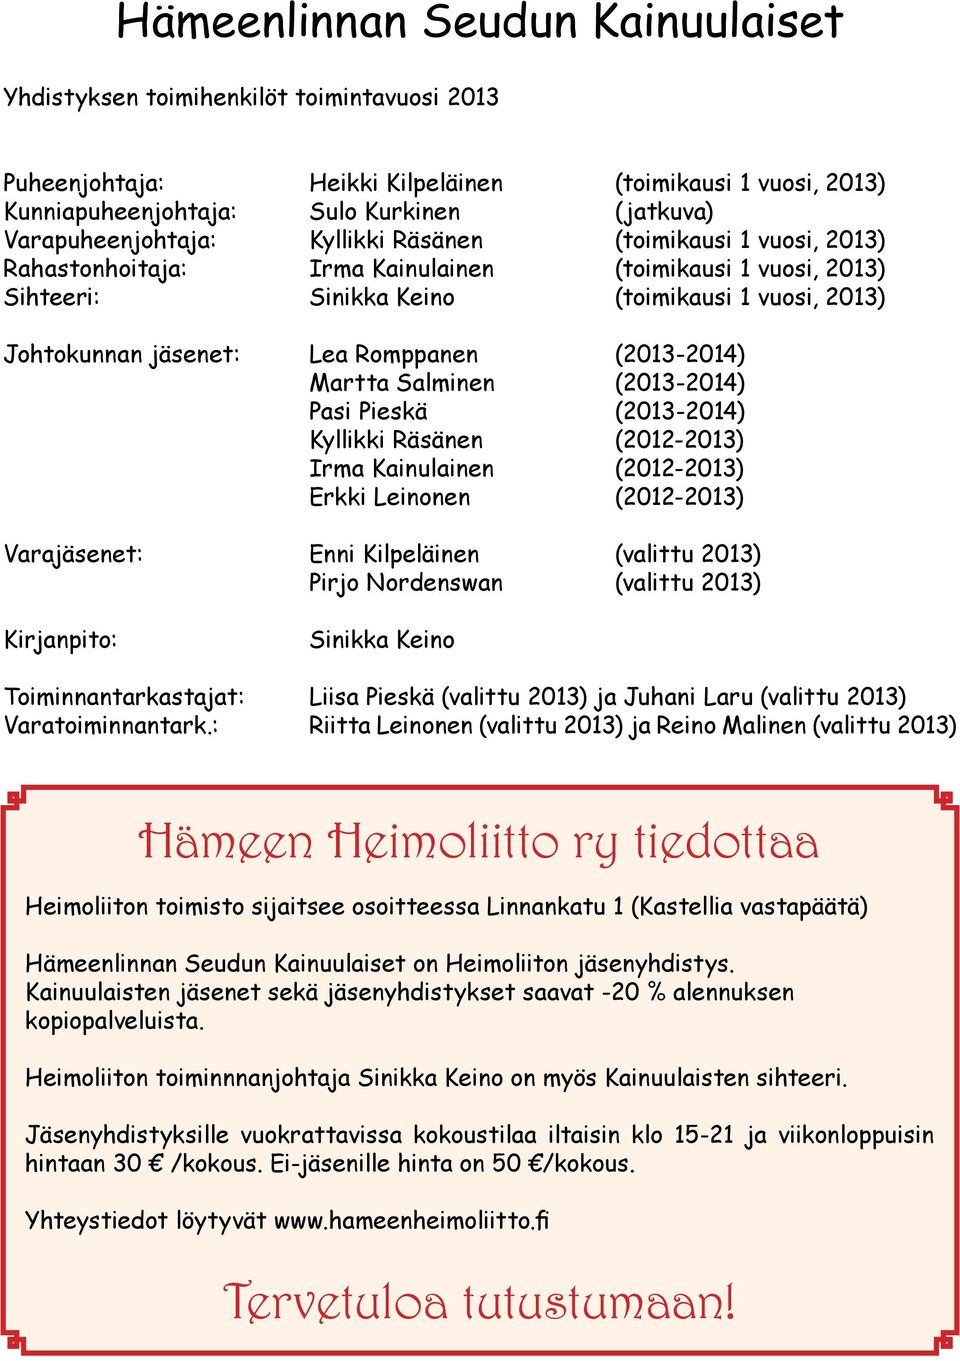 Romppanen (2013-2014) Martta Salminen (2013-2014) Pasi Pieskä (2013-2014) Kyllikki Räsänen (2012-2013) Irma Kainulainen (2012-2013) Erkki Leinonen (2012-2013) Varajäsenet: Enni Kilpeläinen (valittu